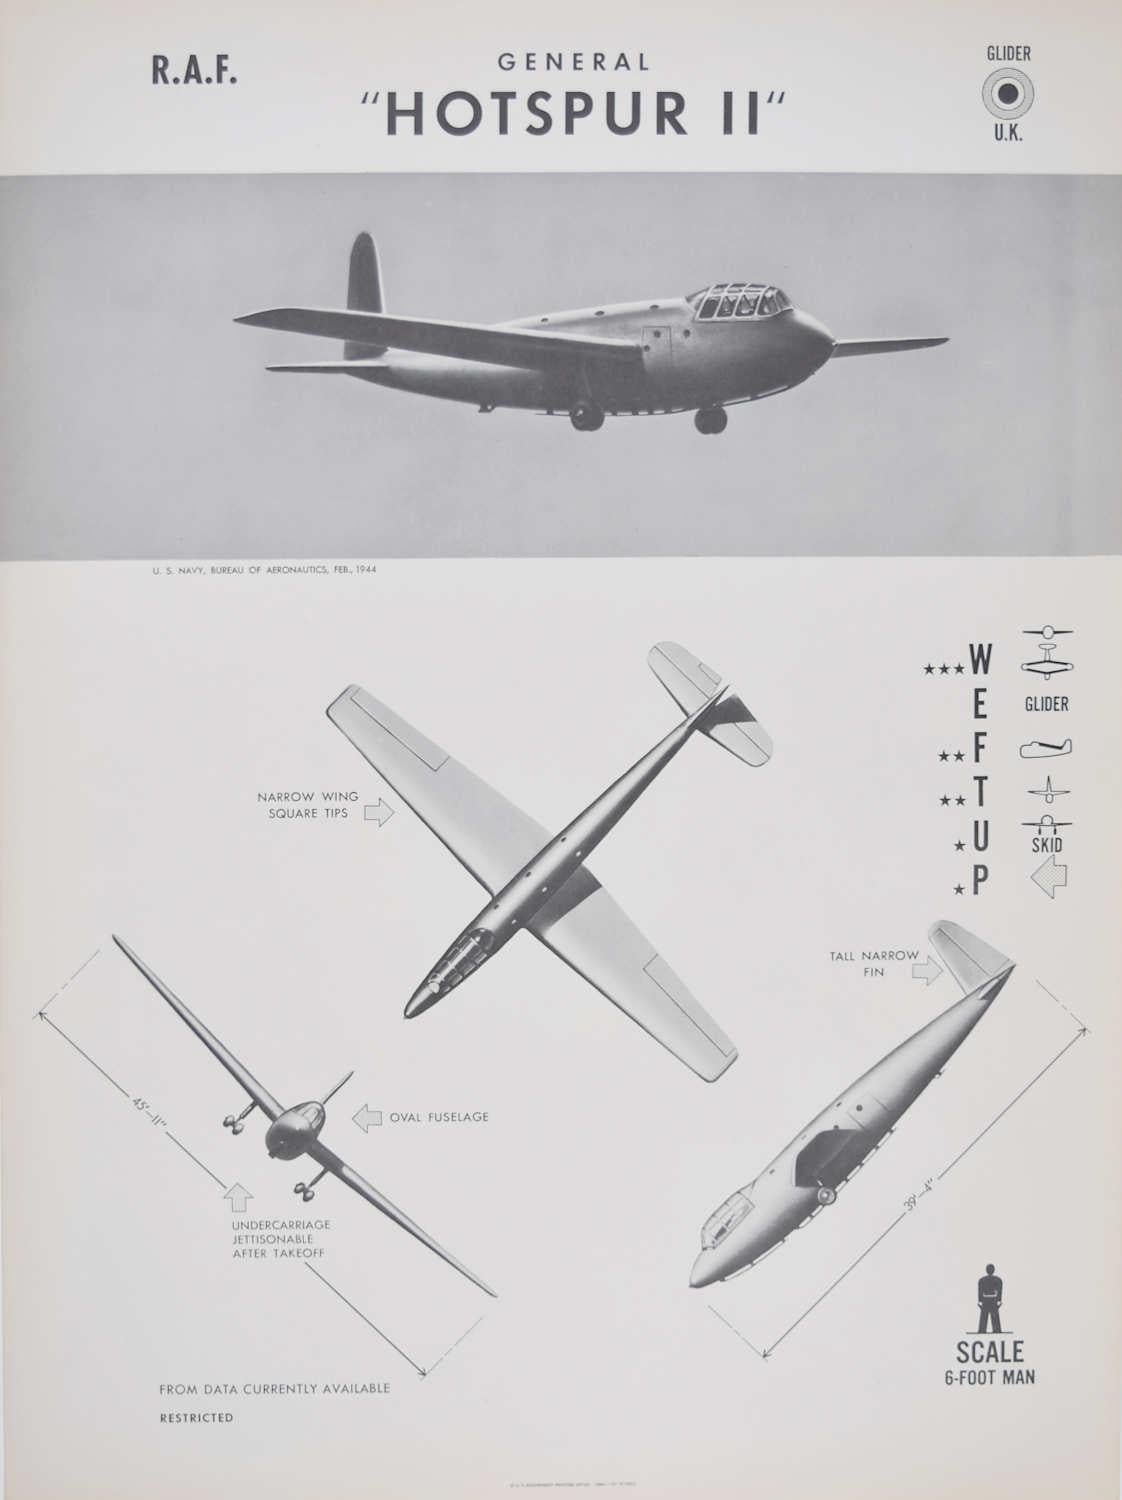 Affiche de reconnaissance d'avions de la RAF General Hotspur II datant de 1942 - Paquebot de la Seconde Guerre mondiale - Navy américaine - Print de Unknown